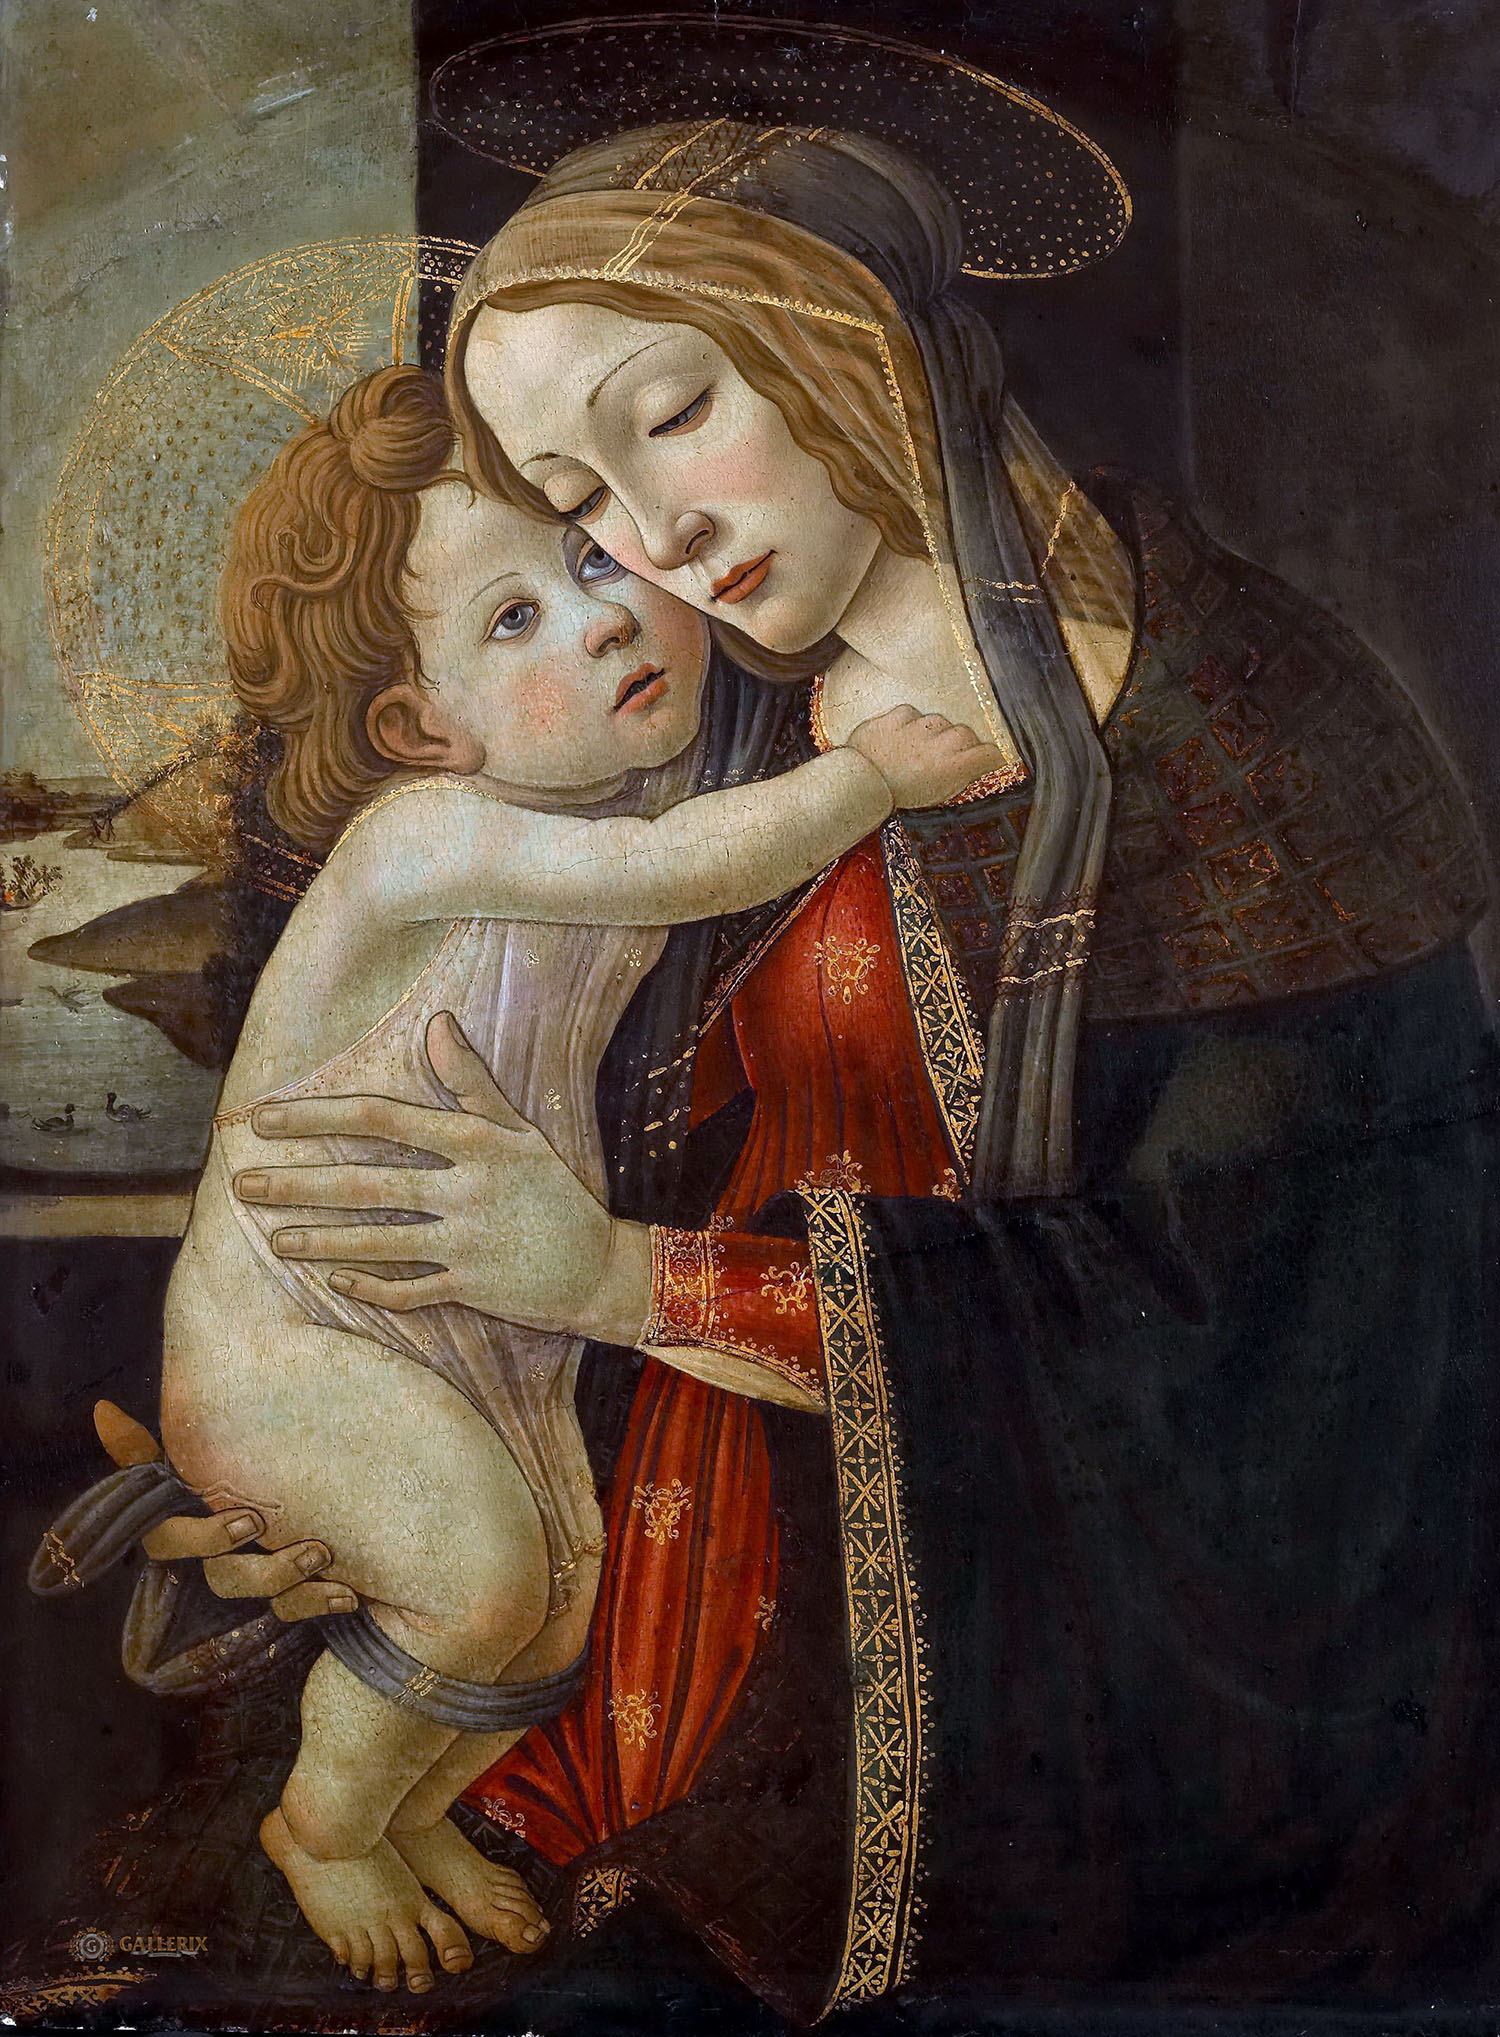 Сандро Боттичелли. "Мадонна с Младенцем". Около 1500. Музей изобразительных искусств, Лилль.